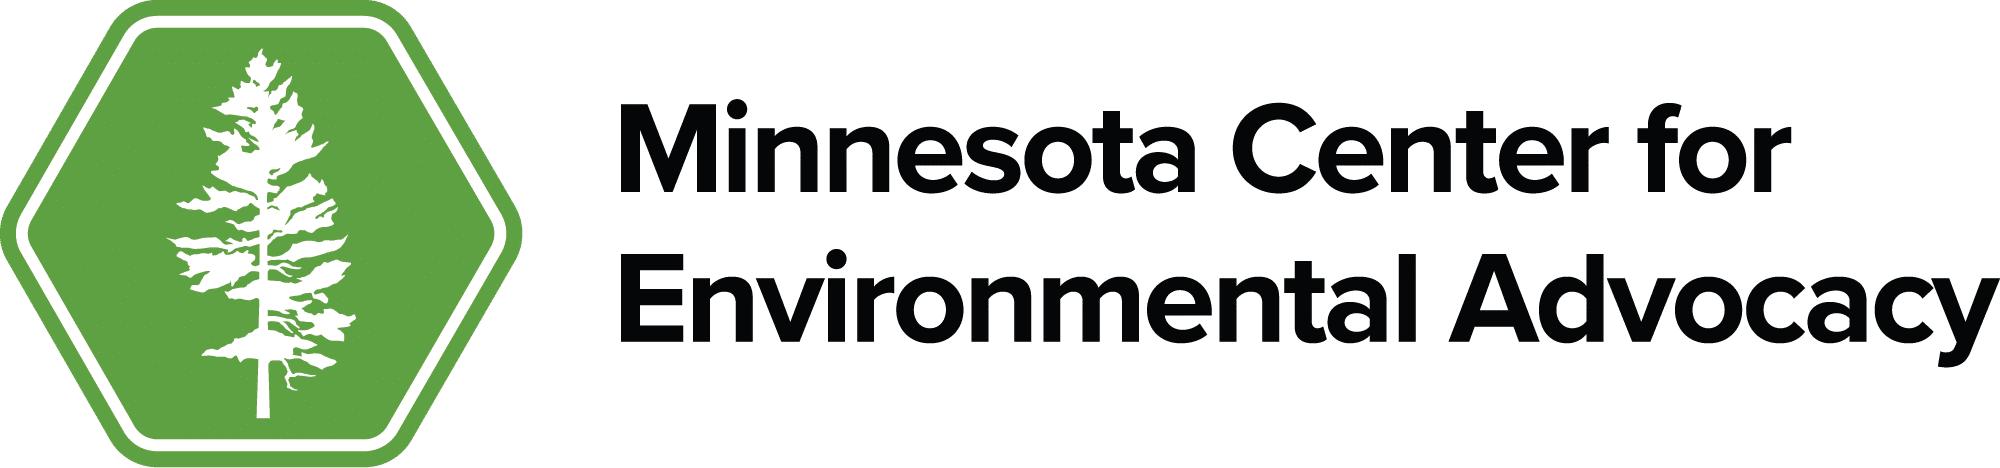 MCEA logo - Minnesota Center for Environmental Advocacy